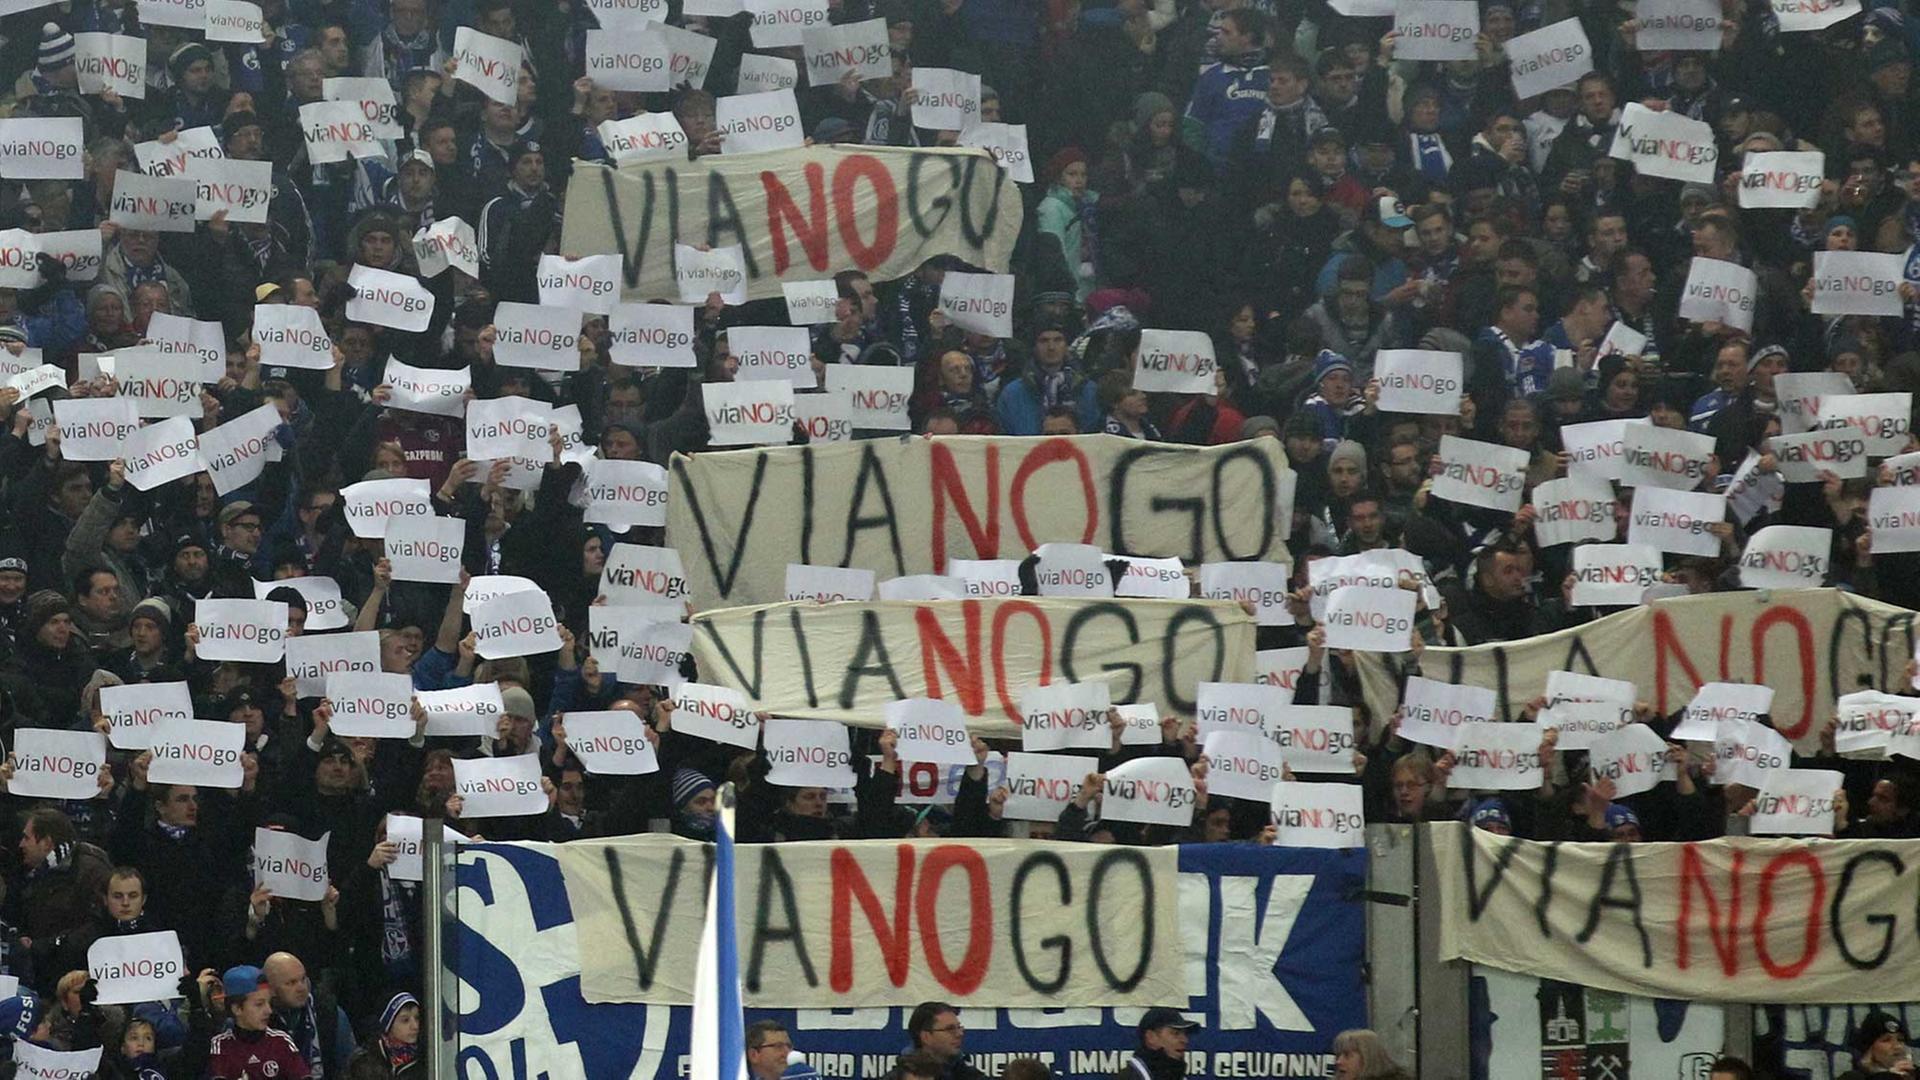 Schalke-Fans zeigen Transparente mit der Aufschrift "Vianogo", um gegen erhöhte Preise des Kartenhändlers Viagogo zu demonstrieren.